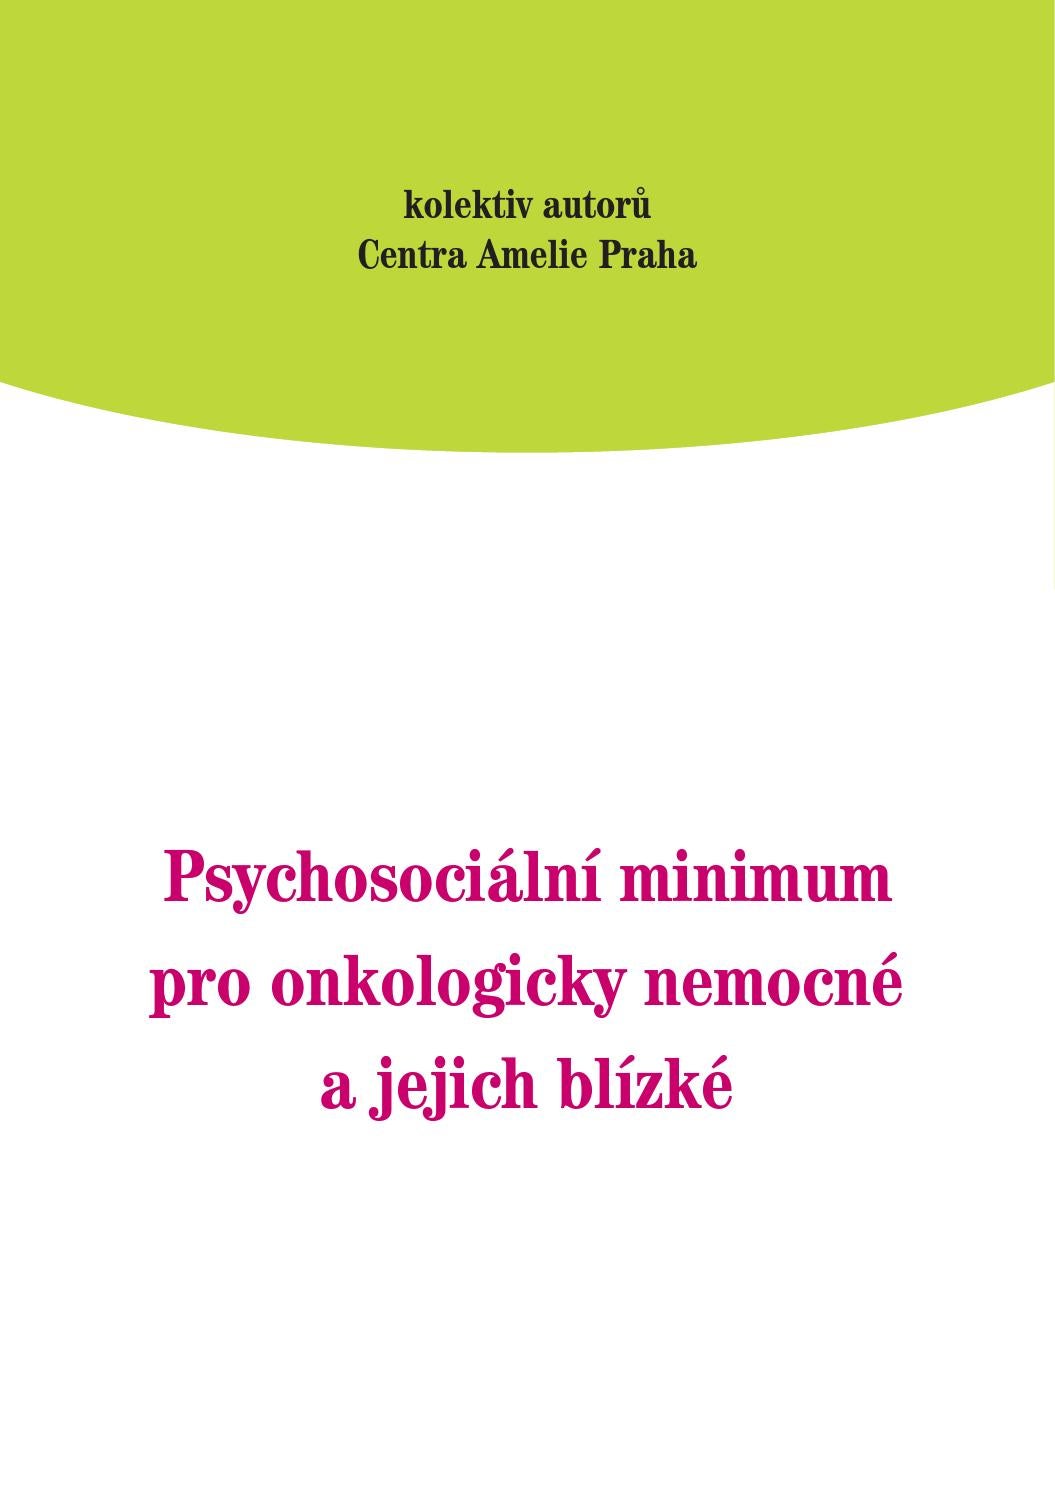 Psychosociální minimum pro onkologicky nemocné a jejich blízké - kolektiv autorů